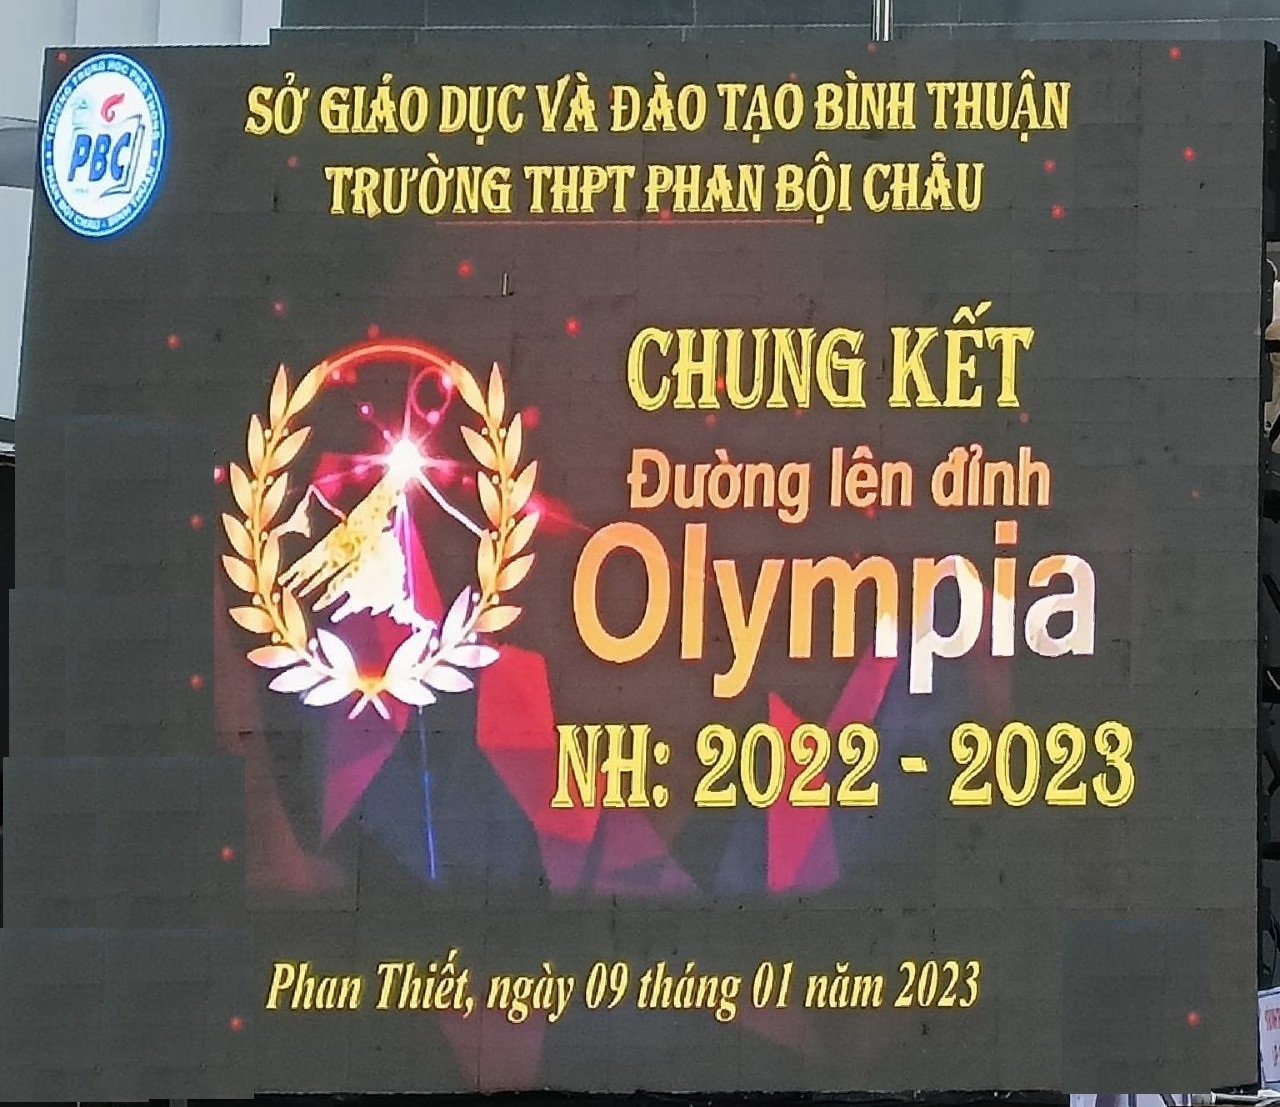 Chung kết "Đường lên đỉnh Olympia lần thứ 6" trường THPT Phan Bội Châu"